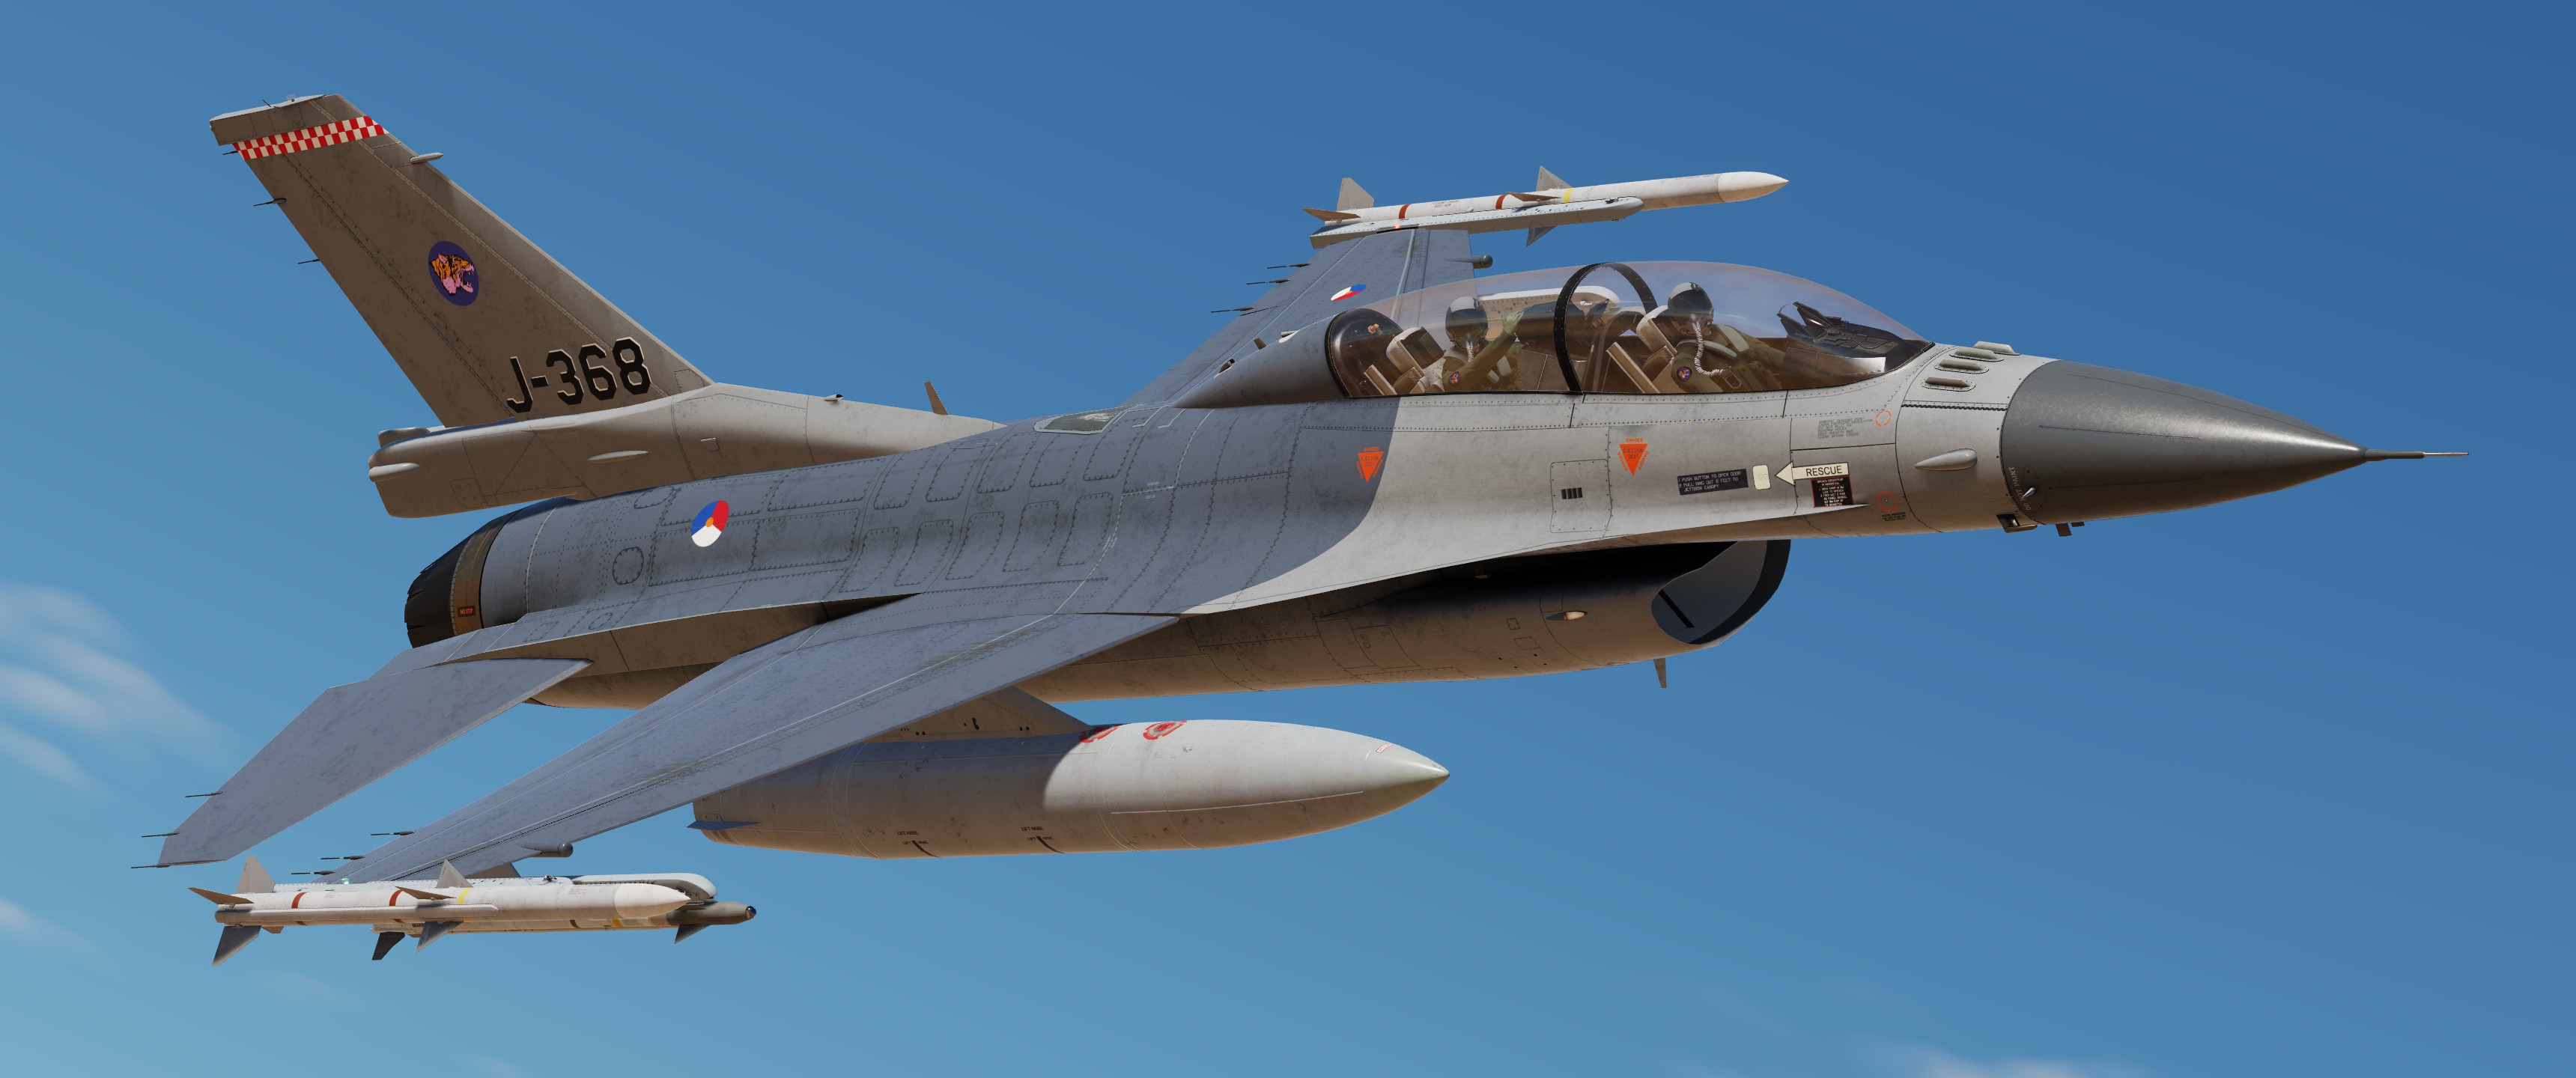 F-16D(BM) SUFA Mod J-368 RNLAF 313Sqn.